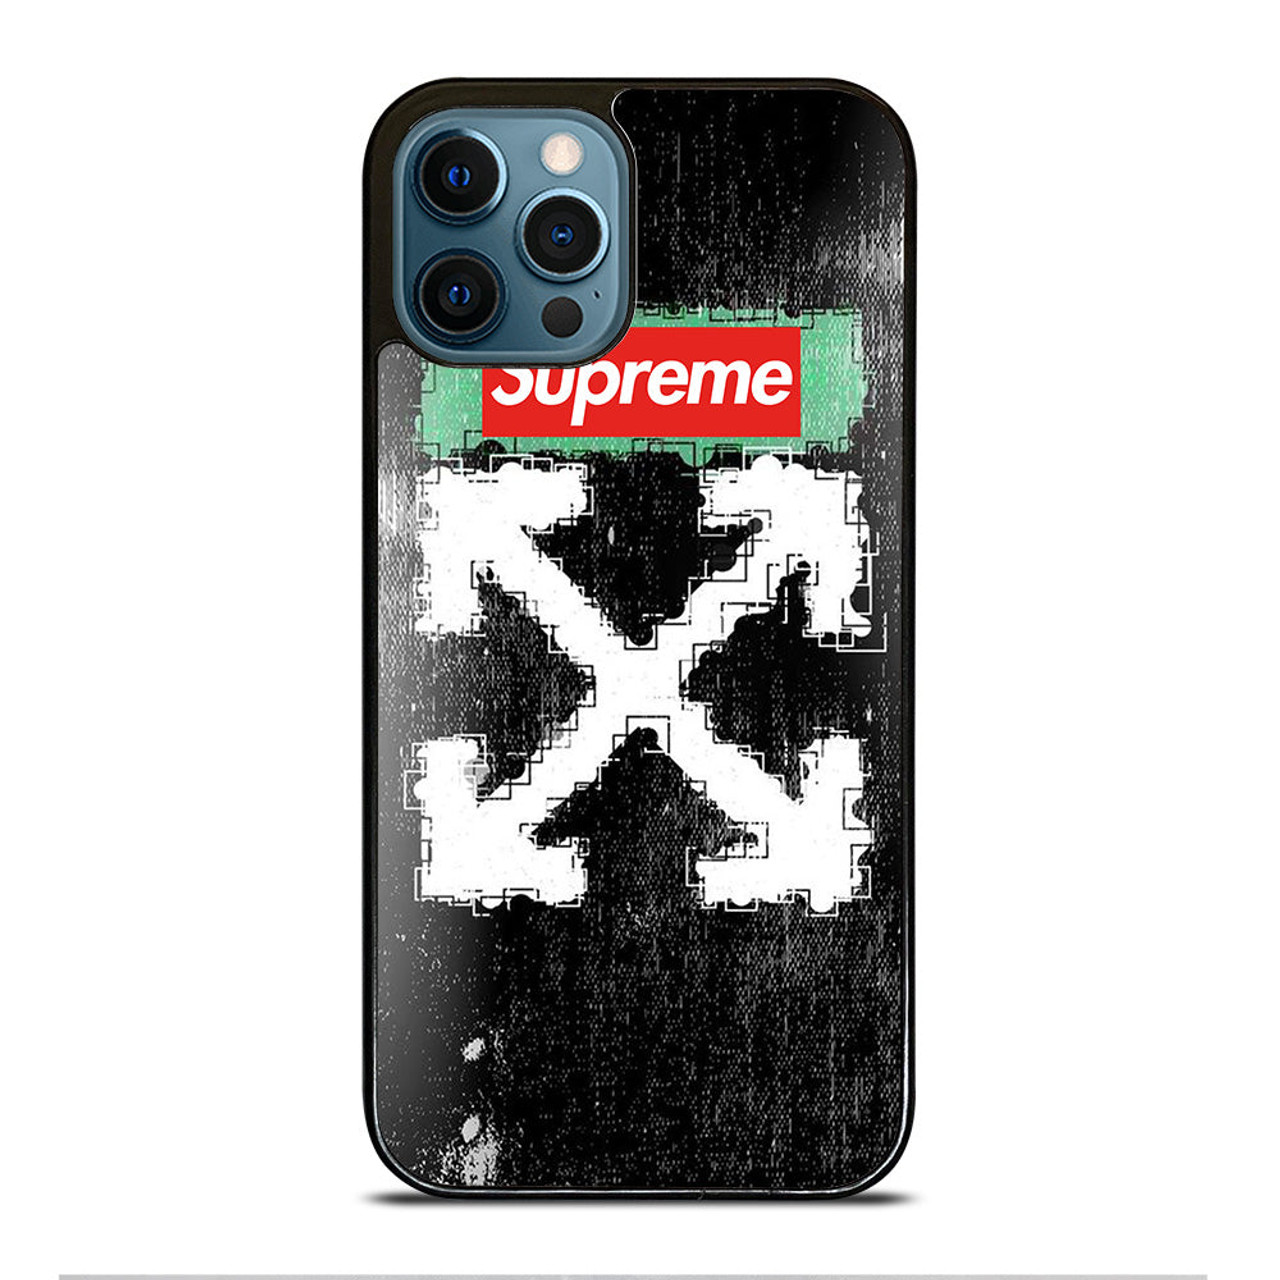 OFF WITE STATUE SUPREME iPhone 15 Pro Max Case Cover